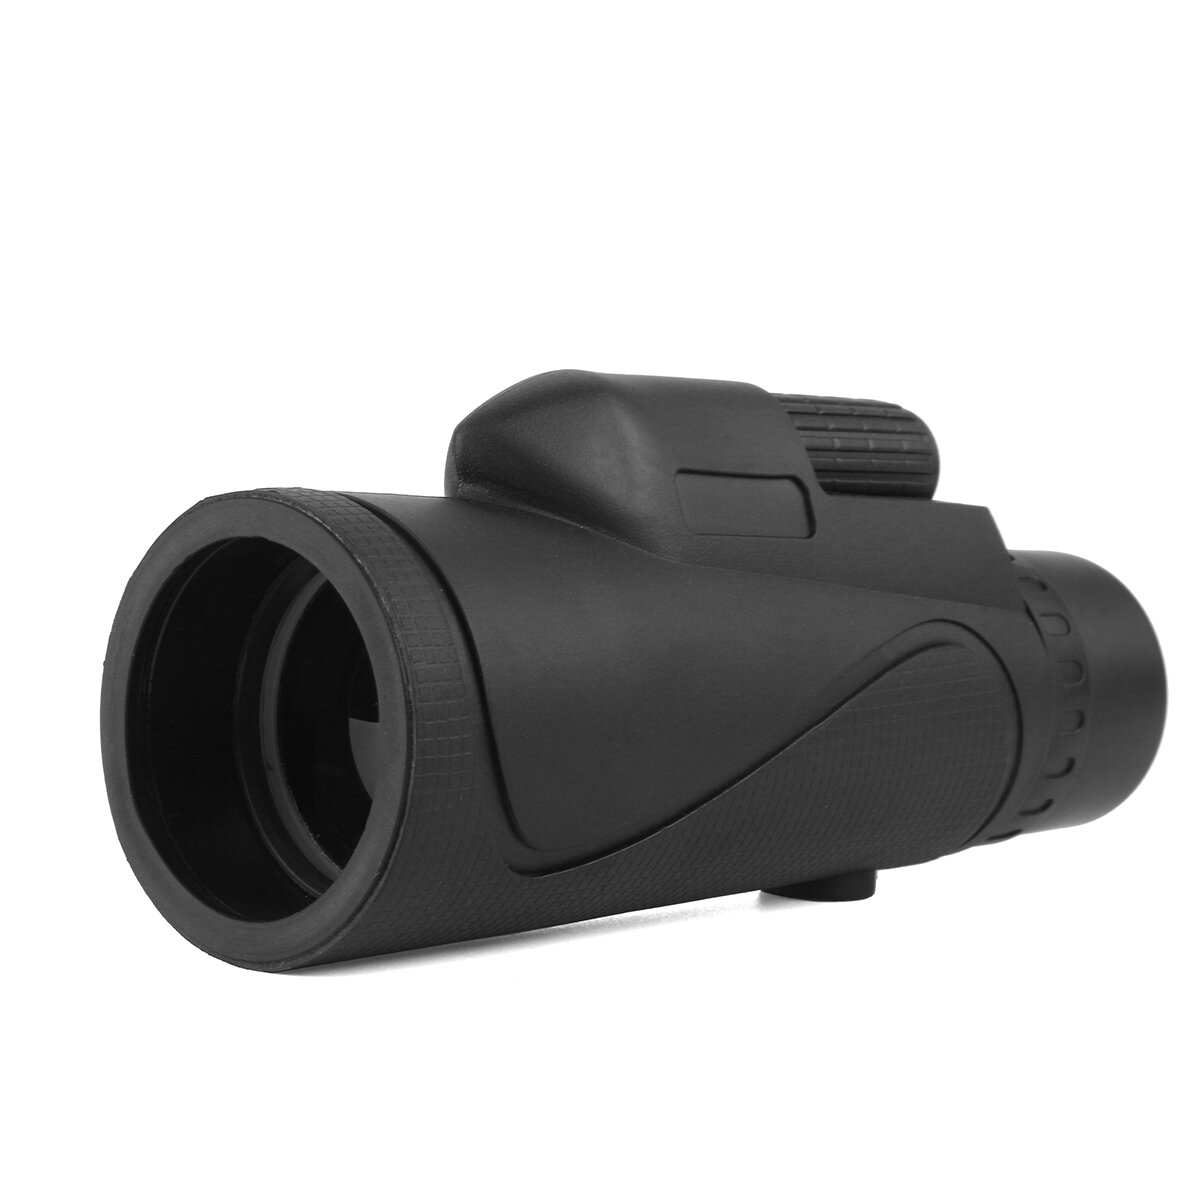 Lente monocular zoom 40x60 impermeável para visão noturna e diurna, telescópio portátil ideal para camping e viagens.